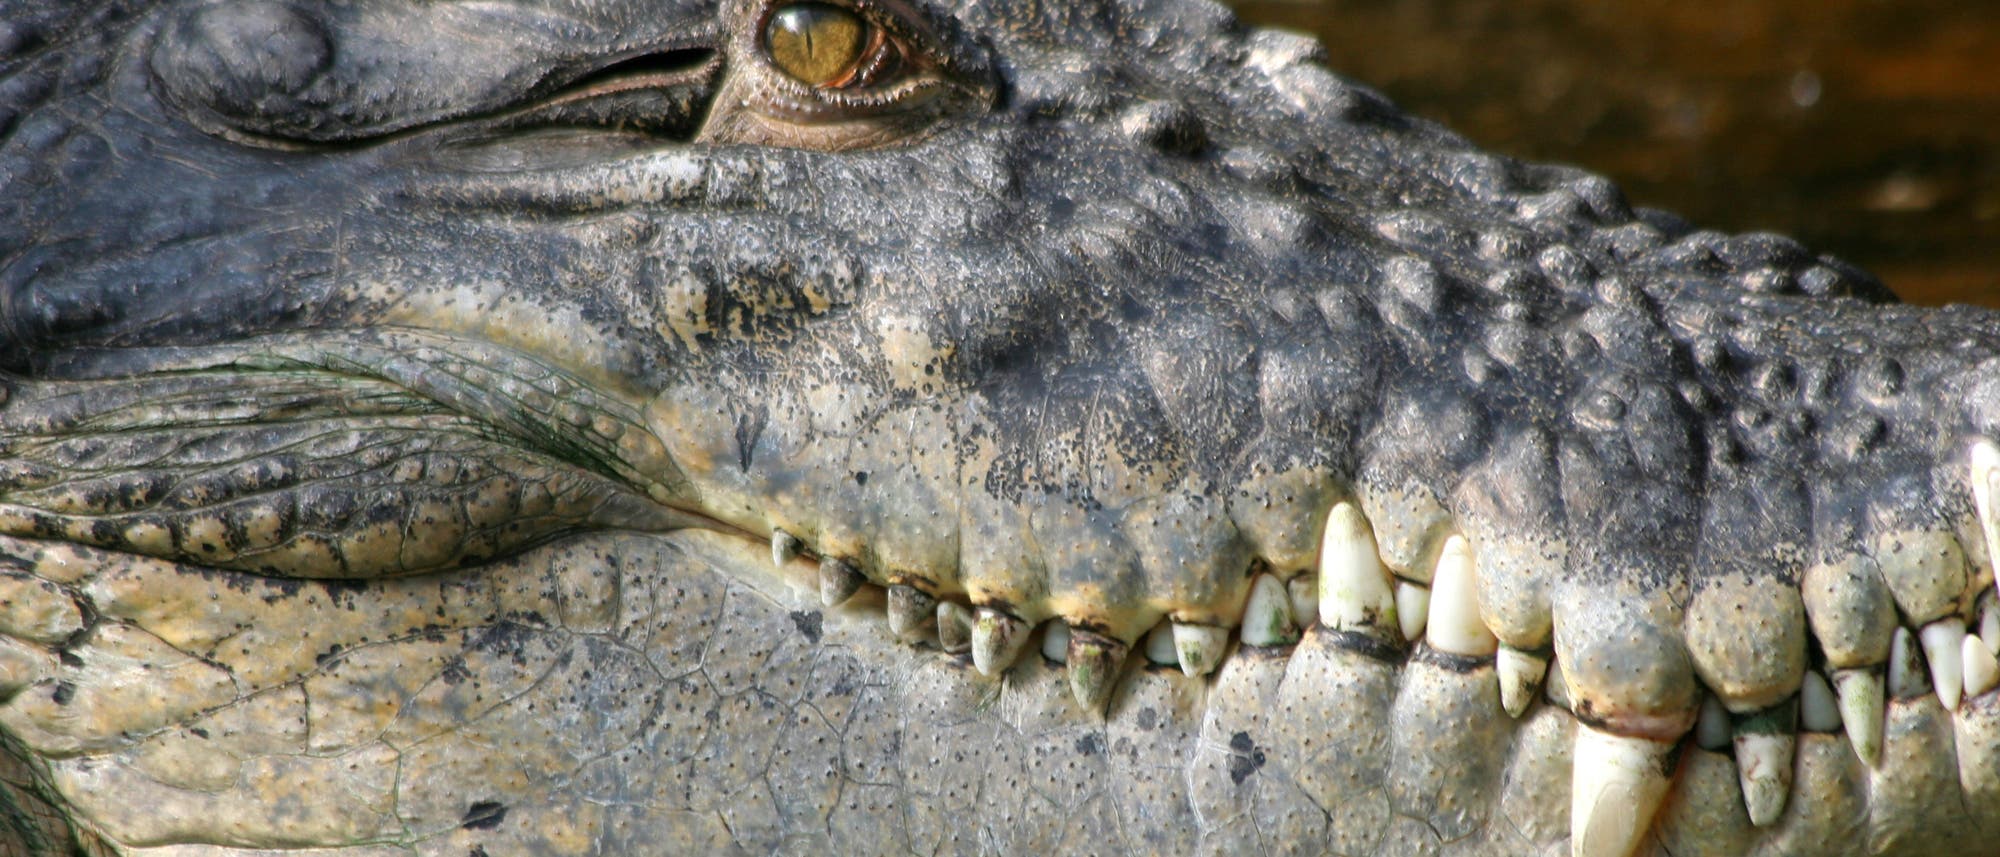 Heute gelten Leistenkrokodil aus Südostasien und Australien als die stärksten Krokodile. Gegen Purussaurus brasiliensis hätten sie keine Chance gehabt.